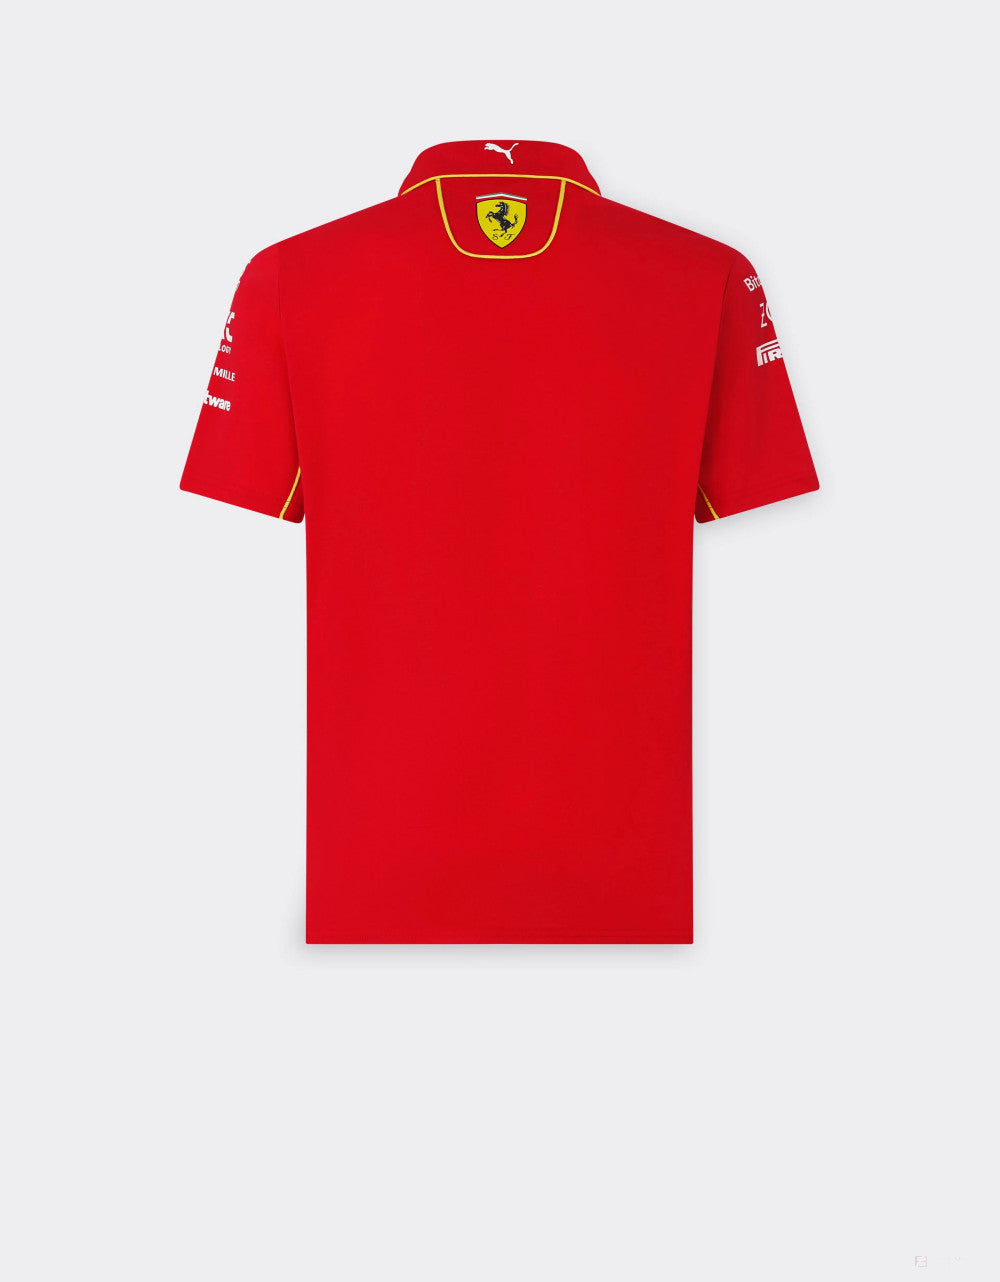 Ferrari tričko s golierom, Puma, tímové, červená, 2024